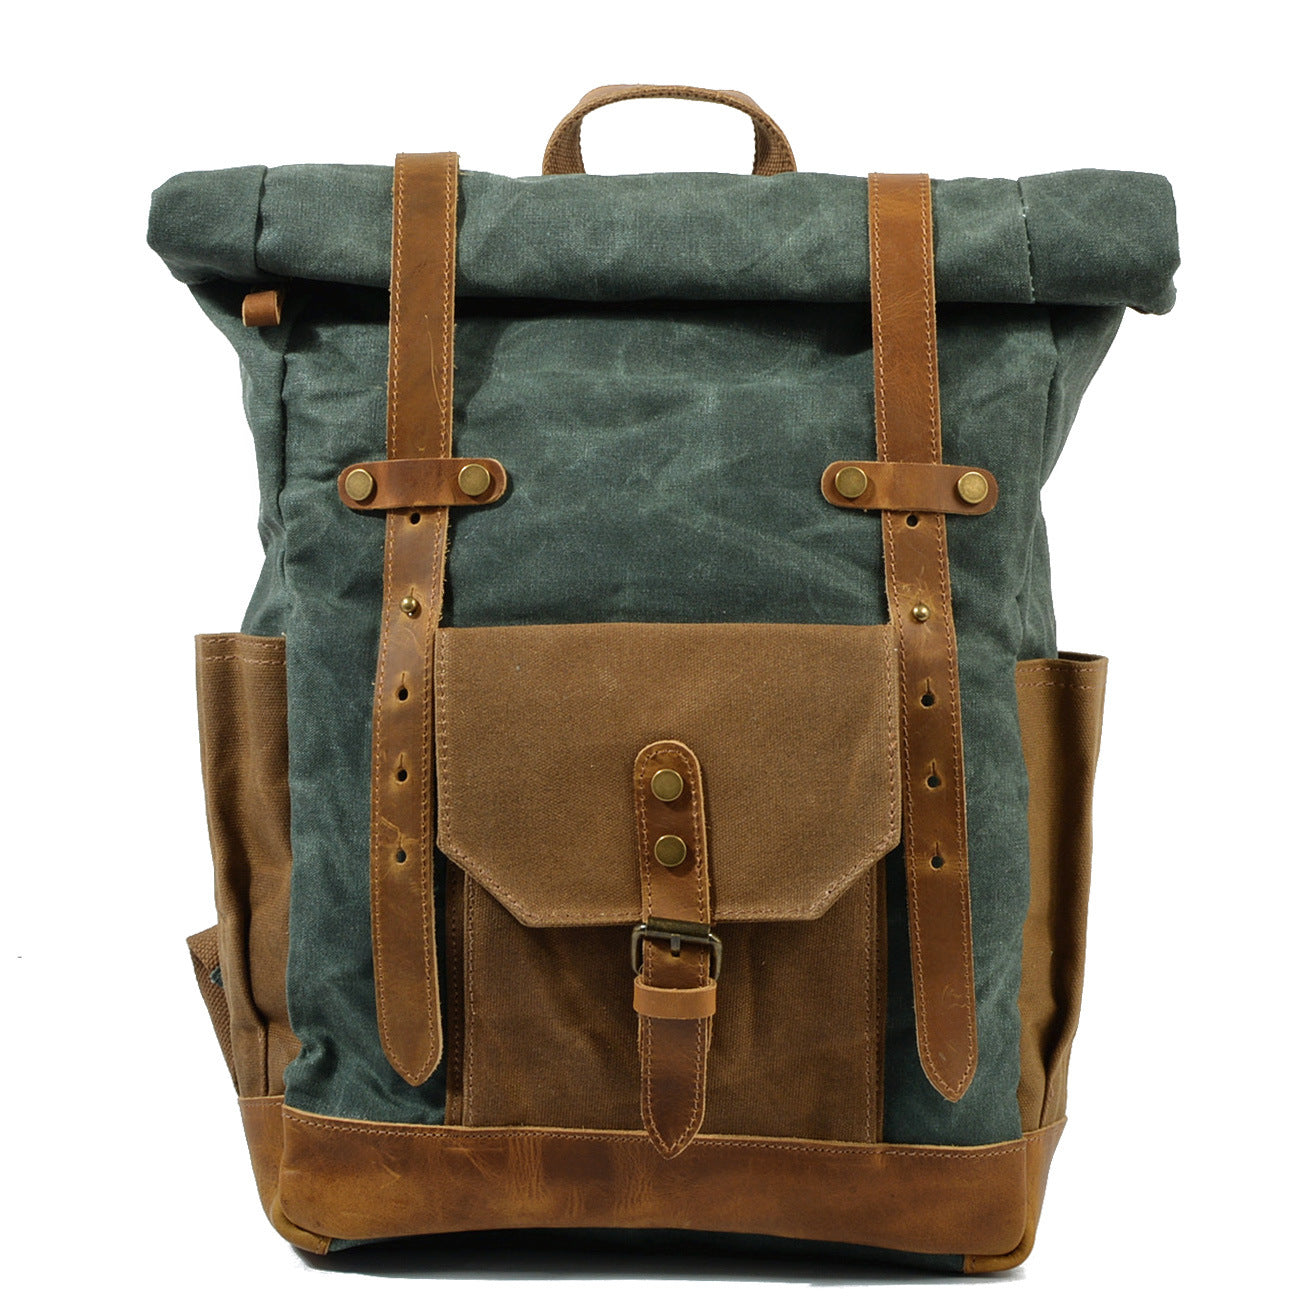 Retro contrast color waterproof rucksack